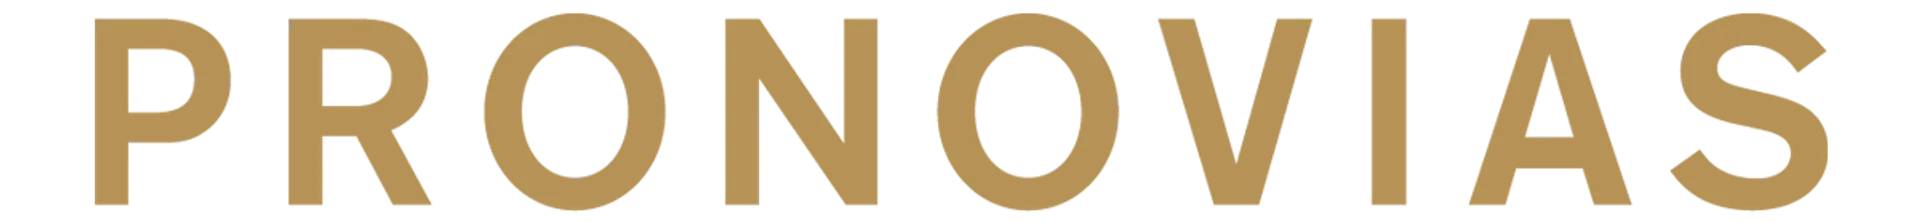 PRONOVIAS logo de catálogo